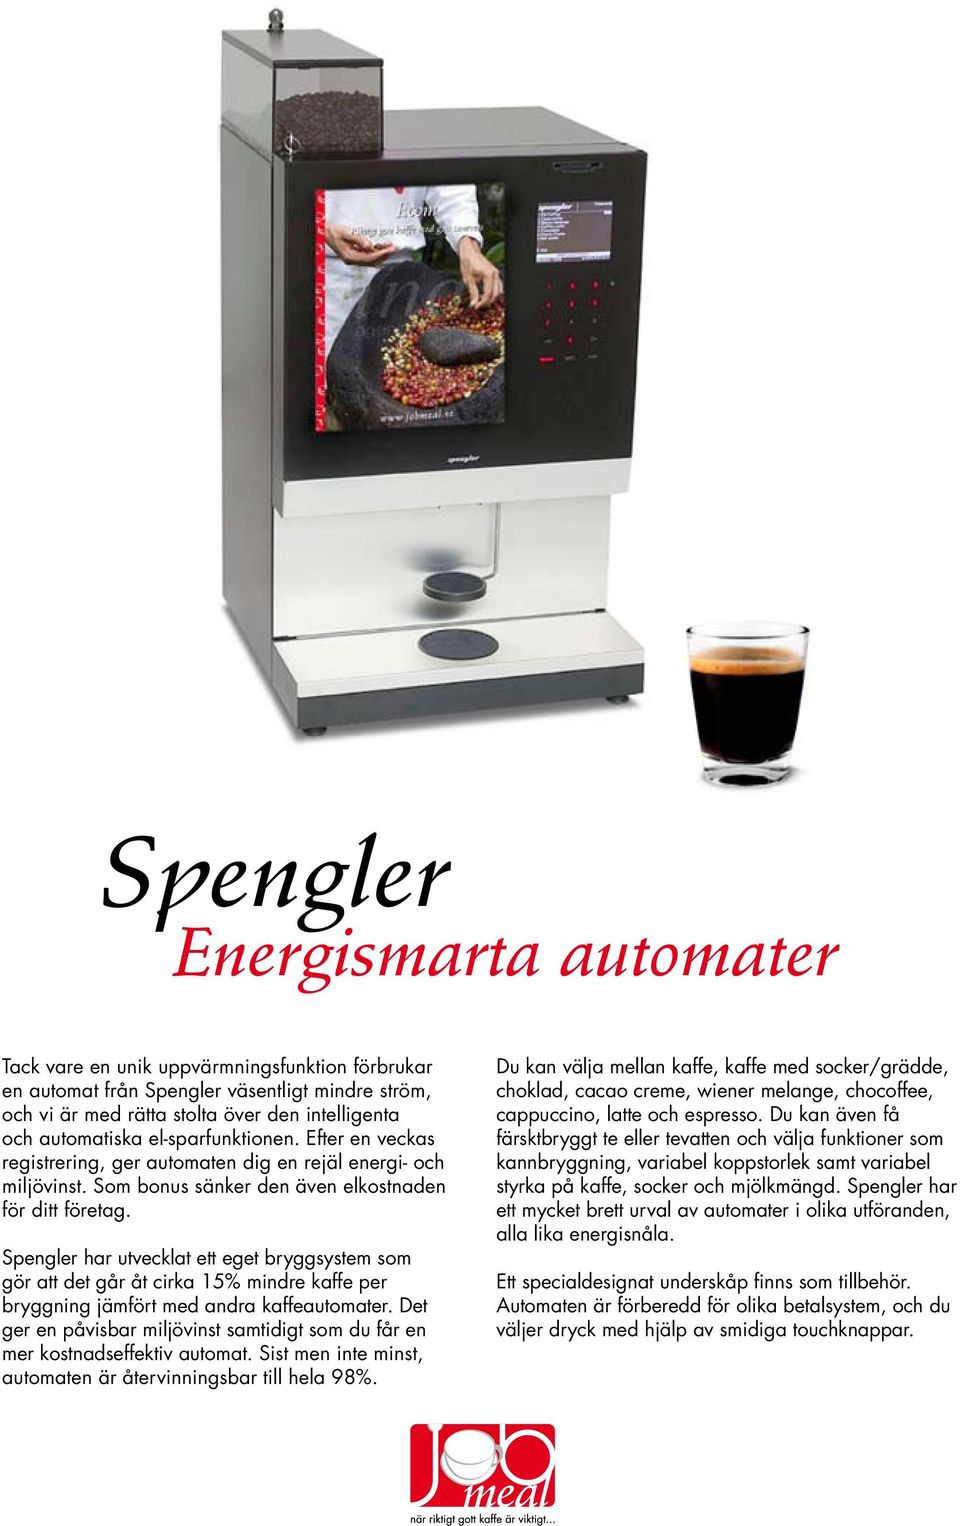 Spengler har utvecklat ett eget bryggsystem som gör att det går åt cirka 15% mindre kaffe per bryggning jämfört med andra kaffeautomater.